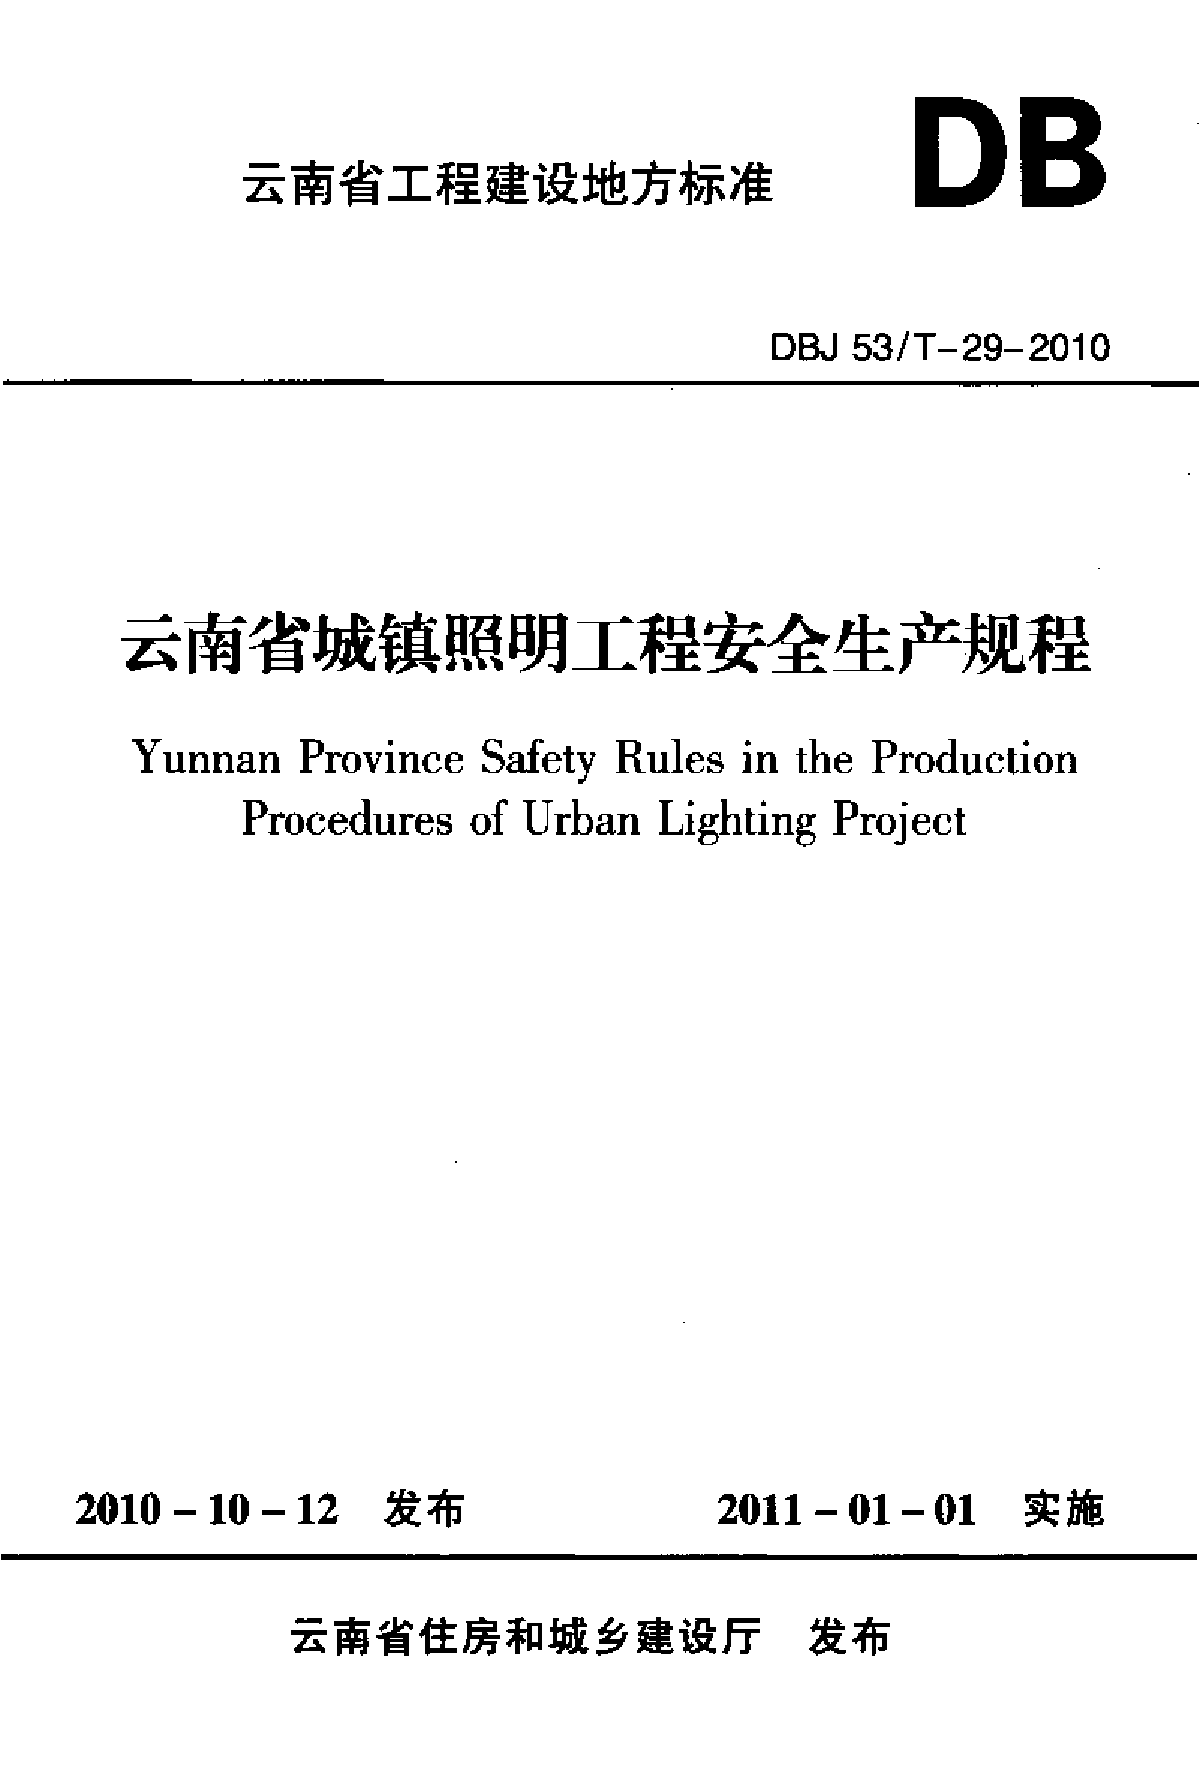 云南省城镇照明工程安全生产规程DBJ53 T-29-2010.